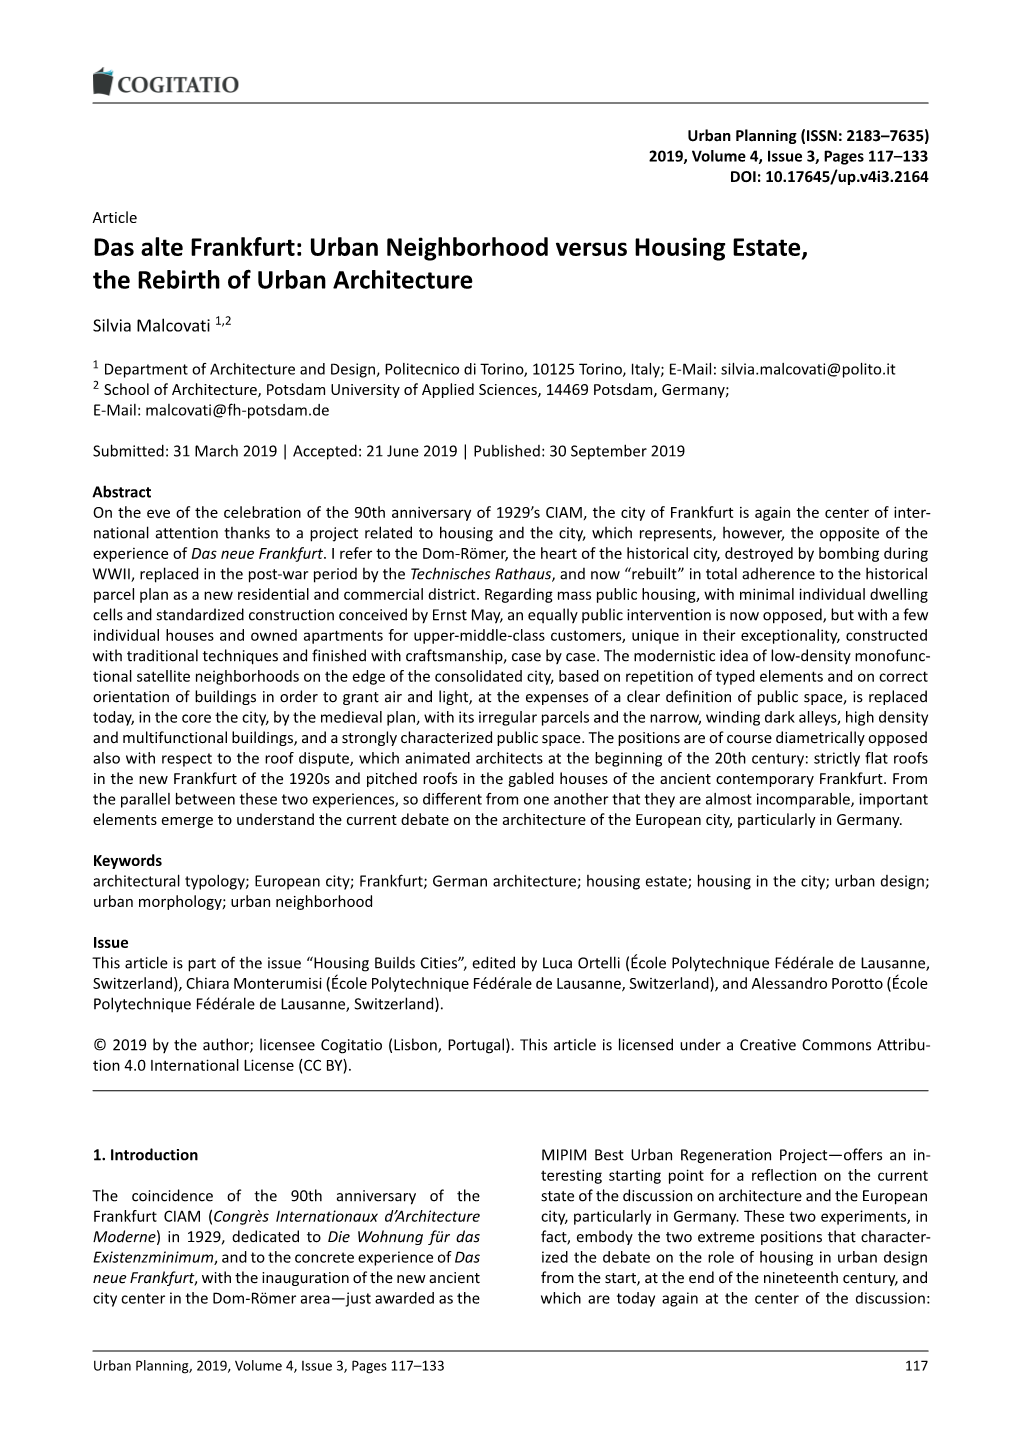 Das Alte Frankfurt: Urban Neighborhood Versus Housing Estate, the Rebirth of Urban Architecture